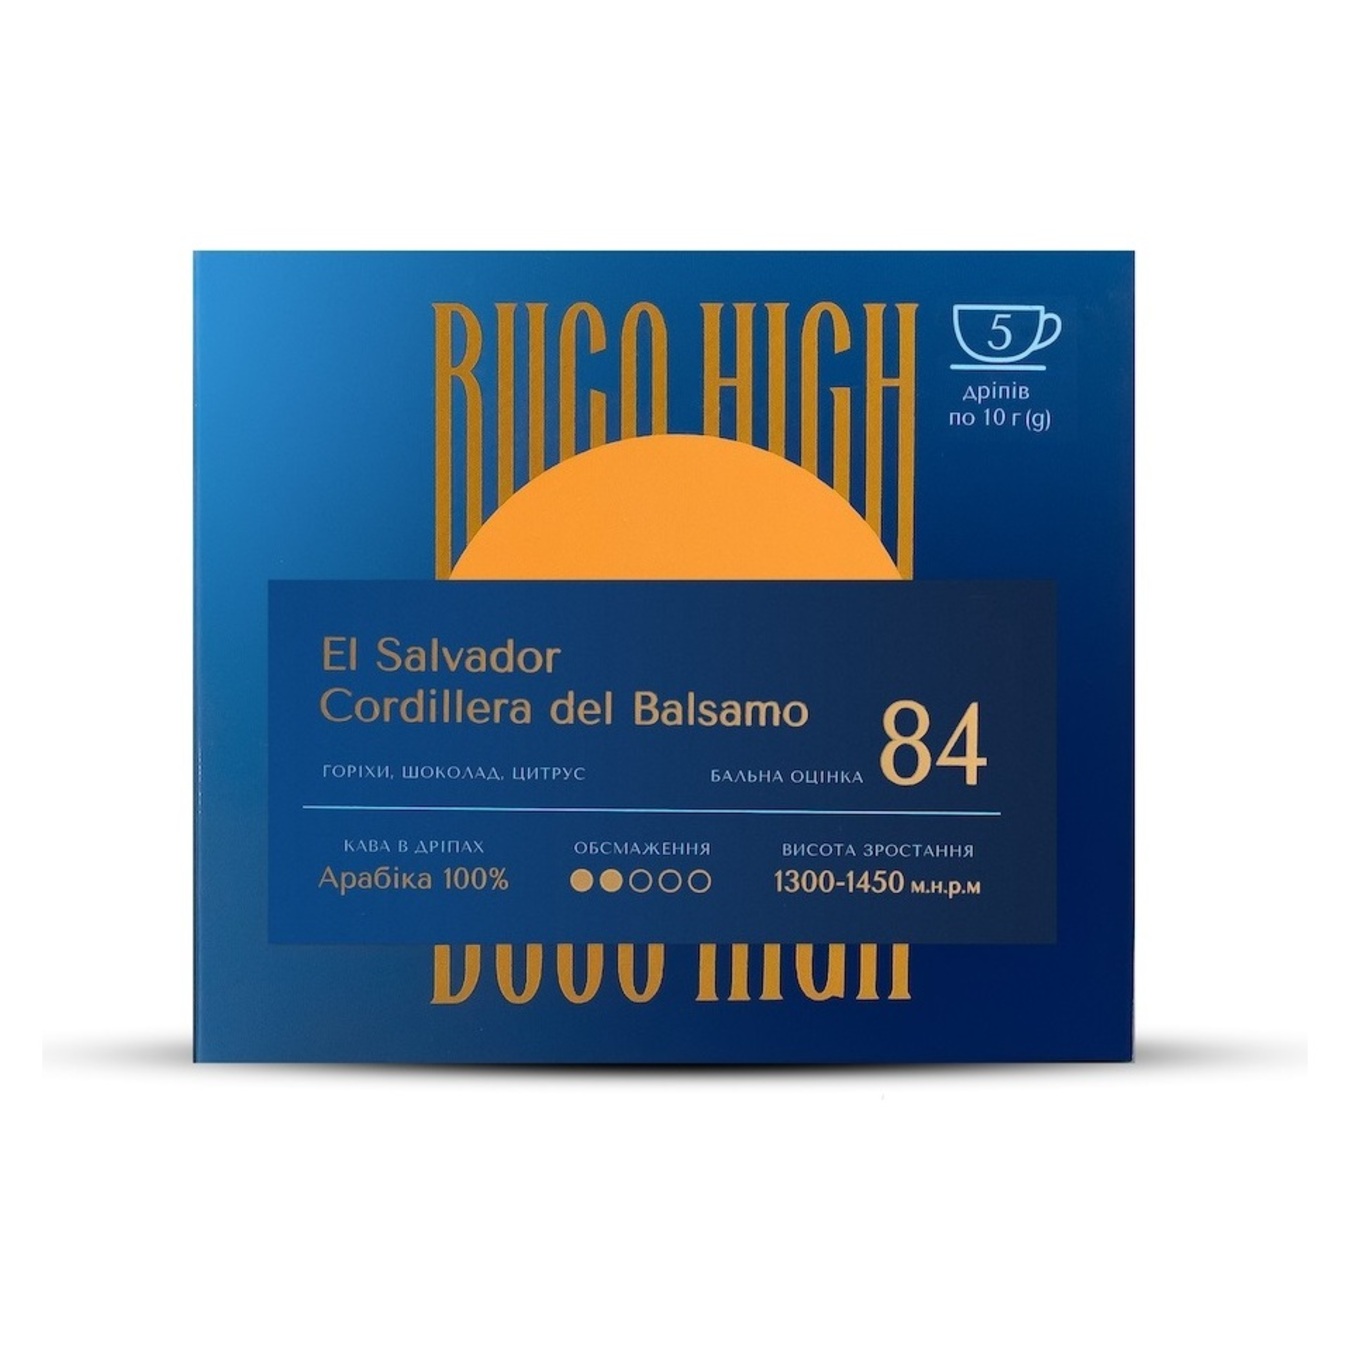 El Salvador Cordillera del Balsamo Buco High (coffee in drip) 5*10g